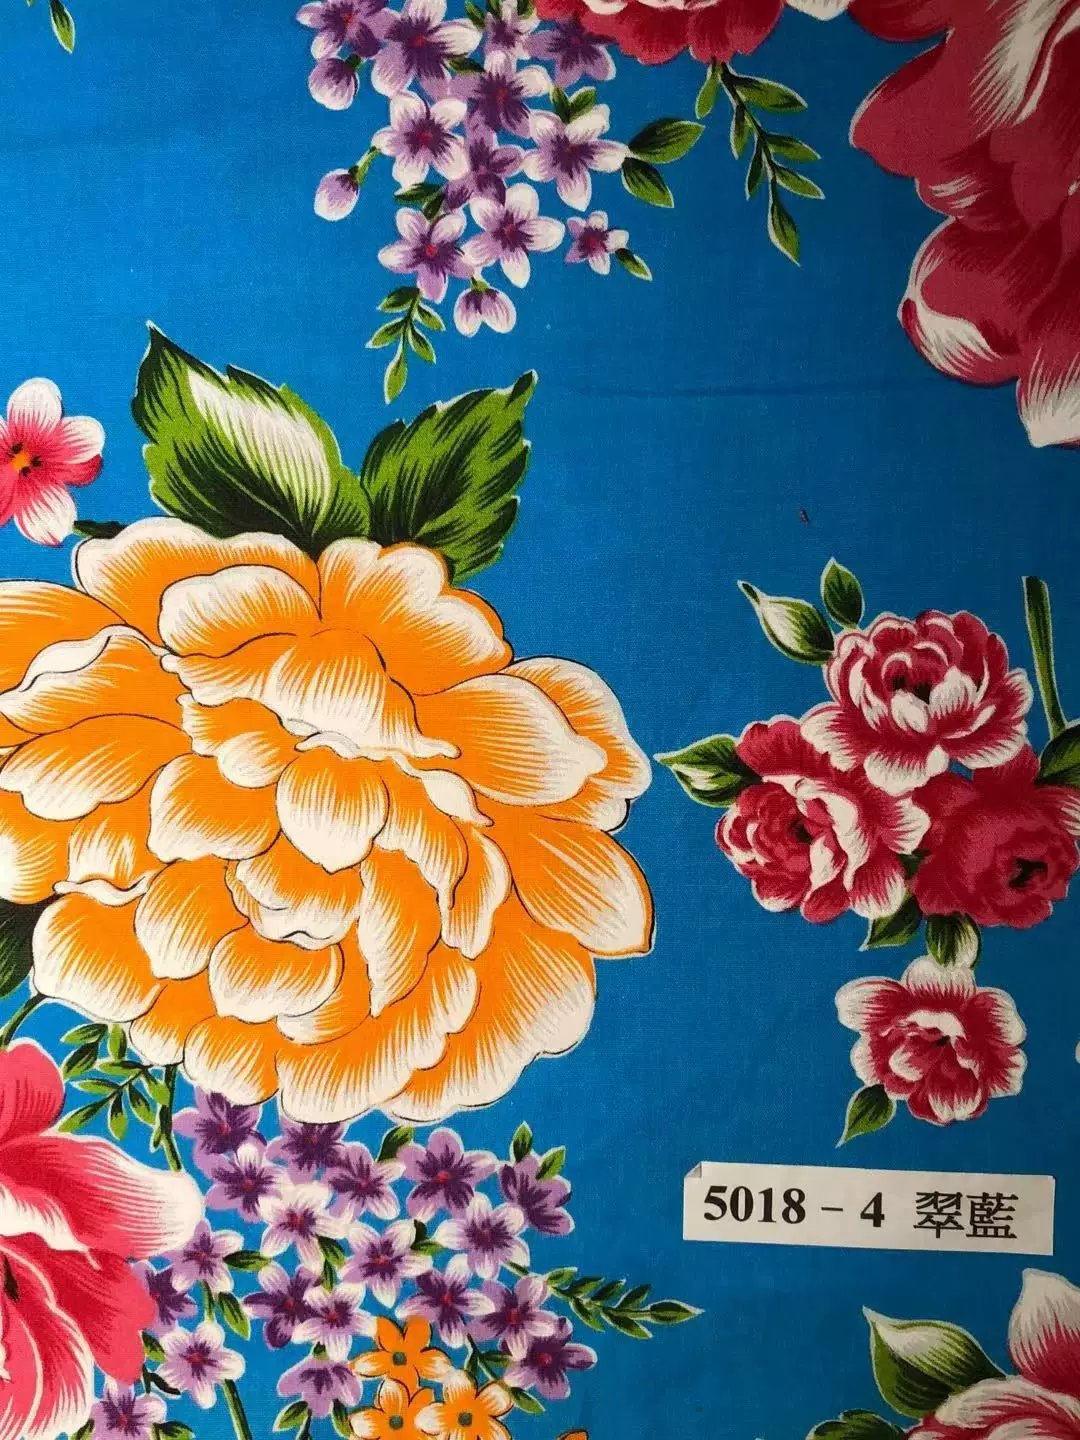 台湾传统客家花布yc 5018田园风牡丹花手工包包布艺惠安女花巾